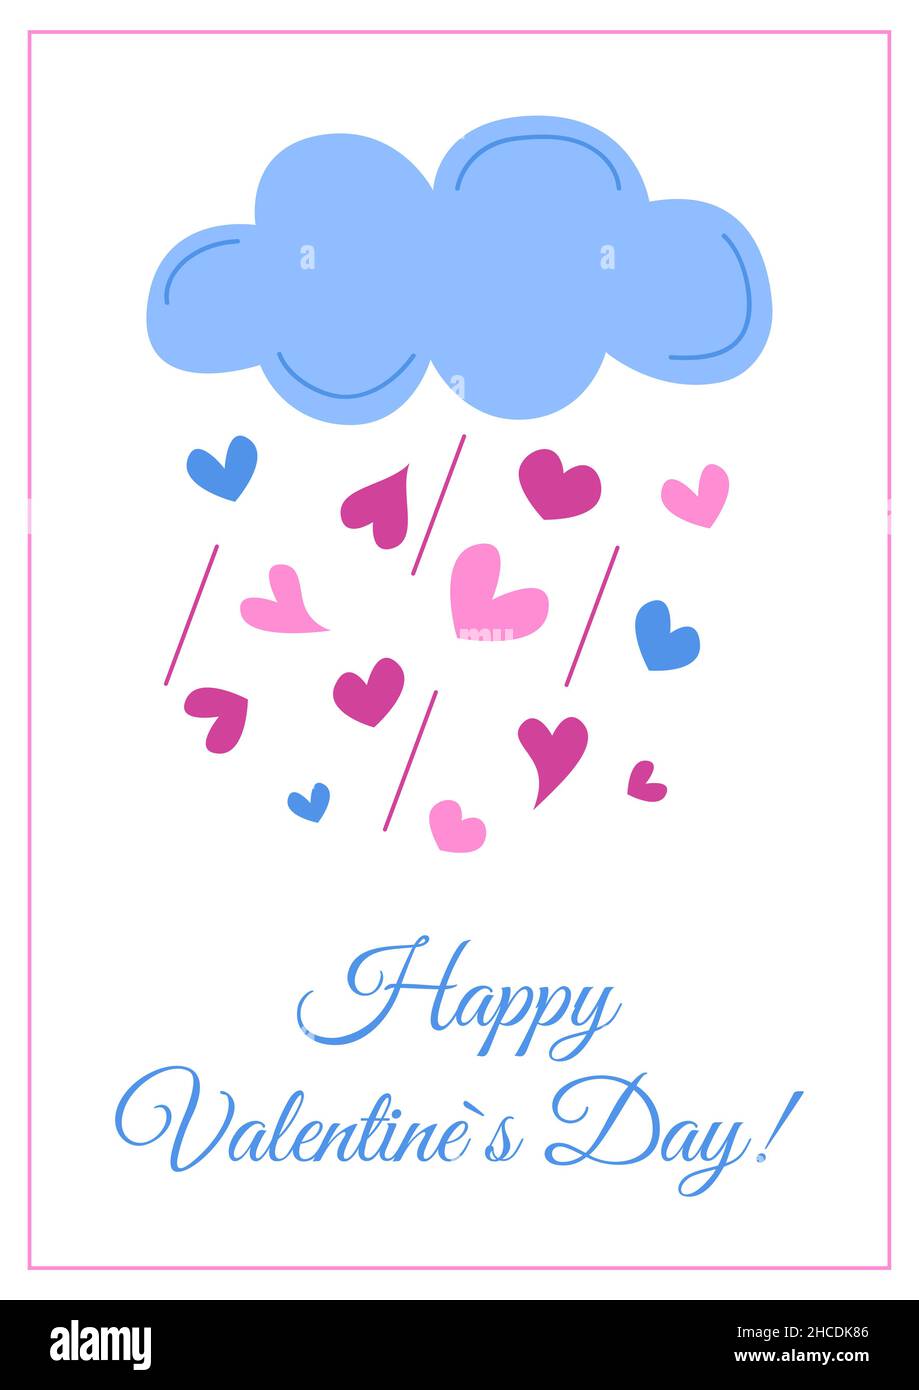 Glückwunschkarte zum Valentinstag isoliert. Liebe niedliche Wolke und Herzen regen. Rosa und blaue Farben. Vektorgrafik flach. Stock Vektor